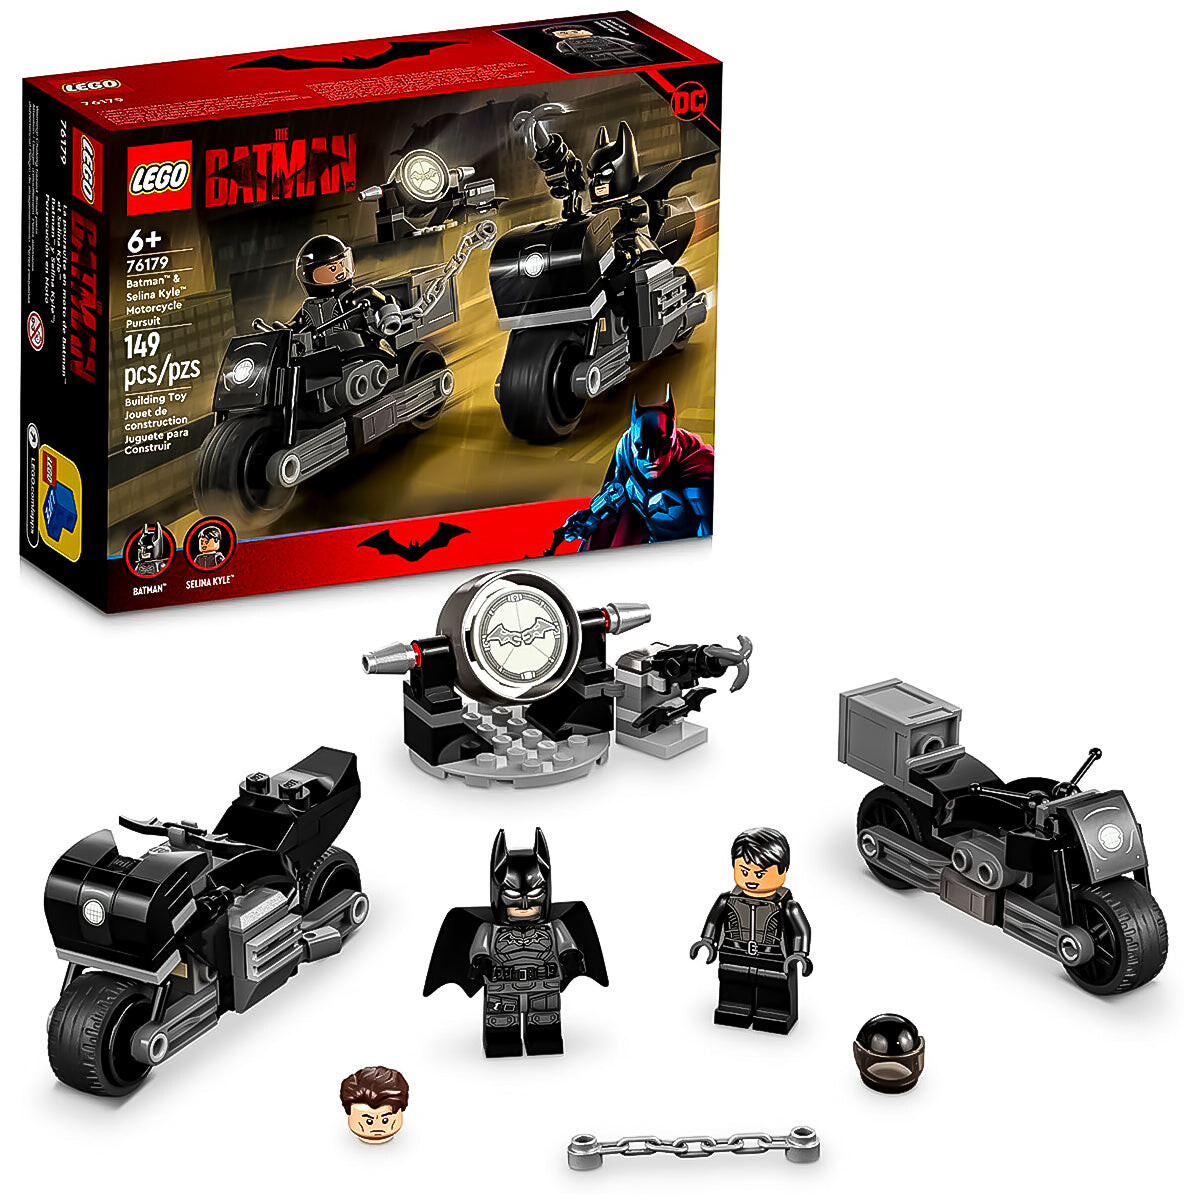 Lego Batman Persecución En Moto C/ Acc 76179 149pcs 